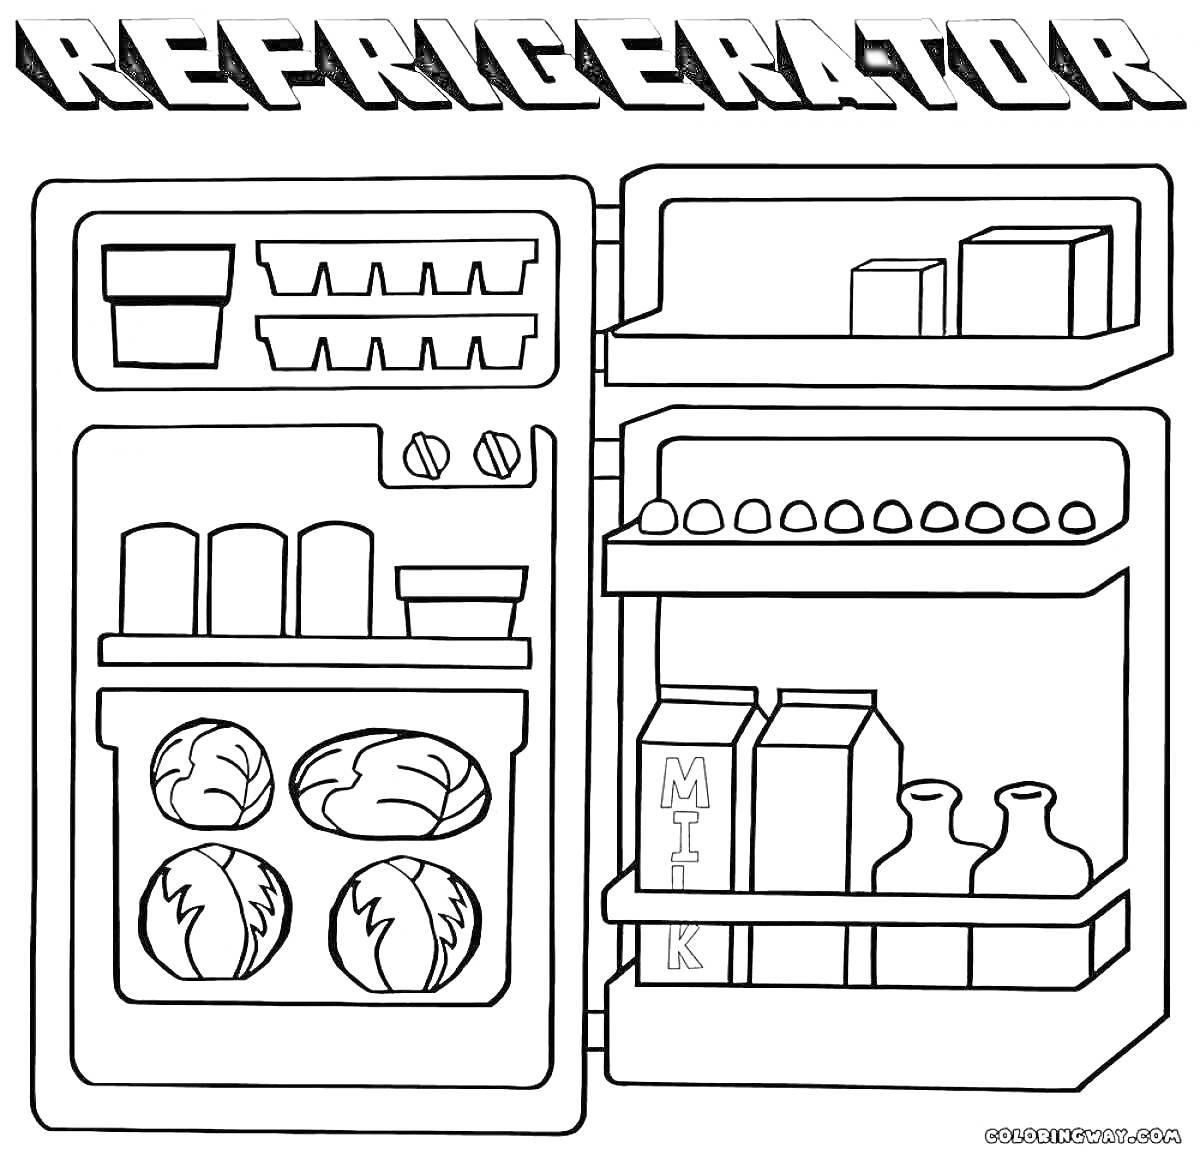 Раскраска Раскраска с изображением холодильника с открытой дверью, содержащего ящики, контейнеры, капусту, яйца, бутылки с молоком и другими жидкостями.